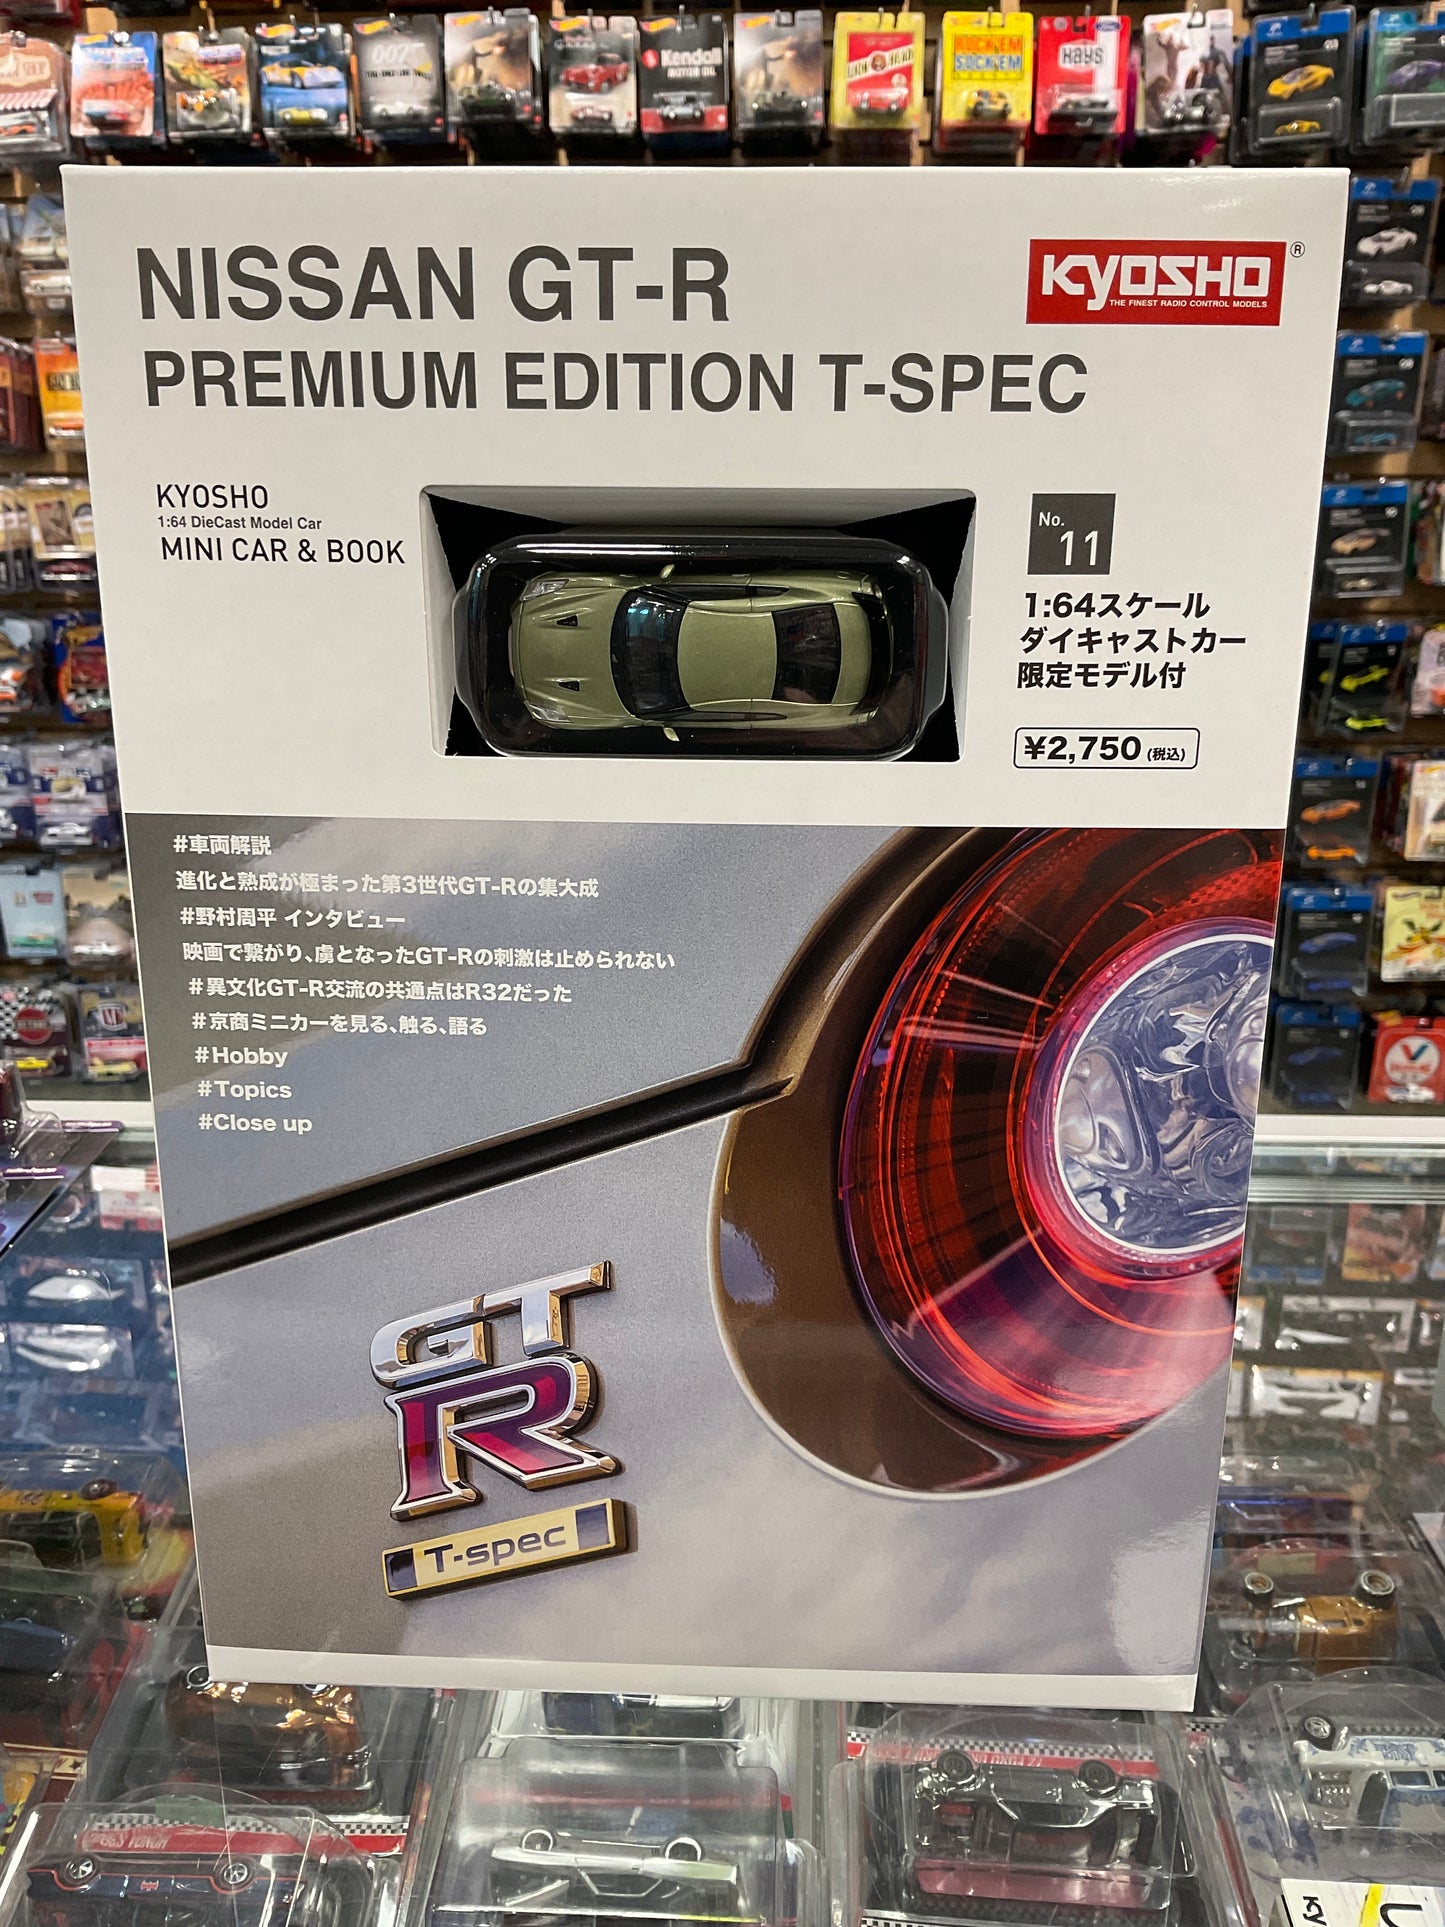 Kyosho mini book & car set #11 Nissan GT-R Premium Edition T-Spec